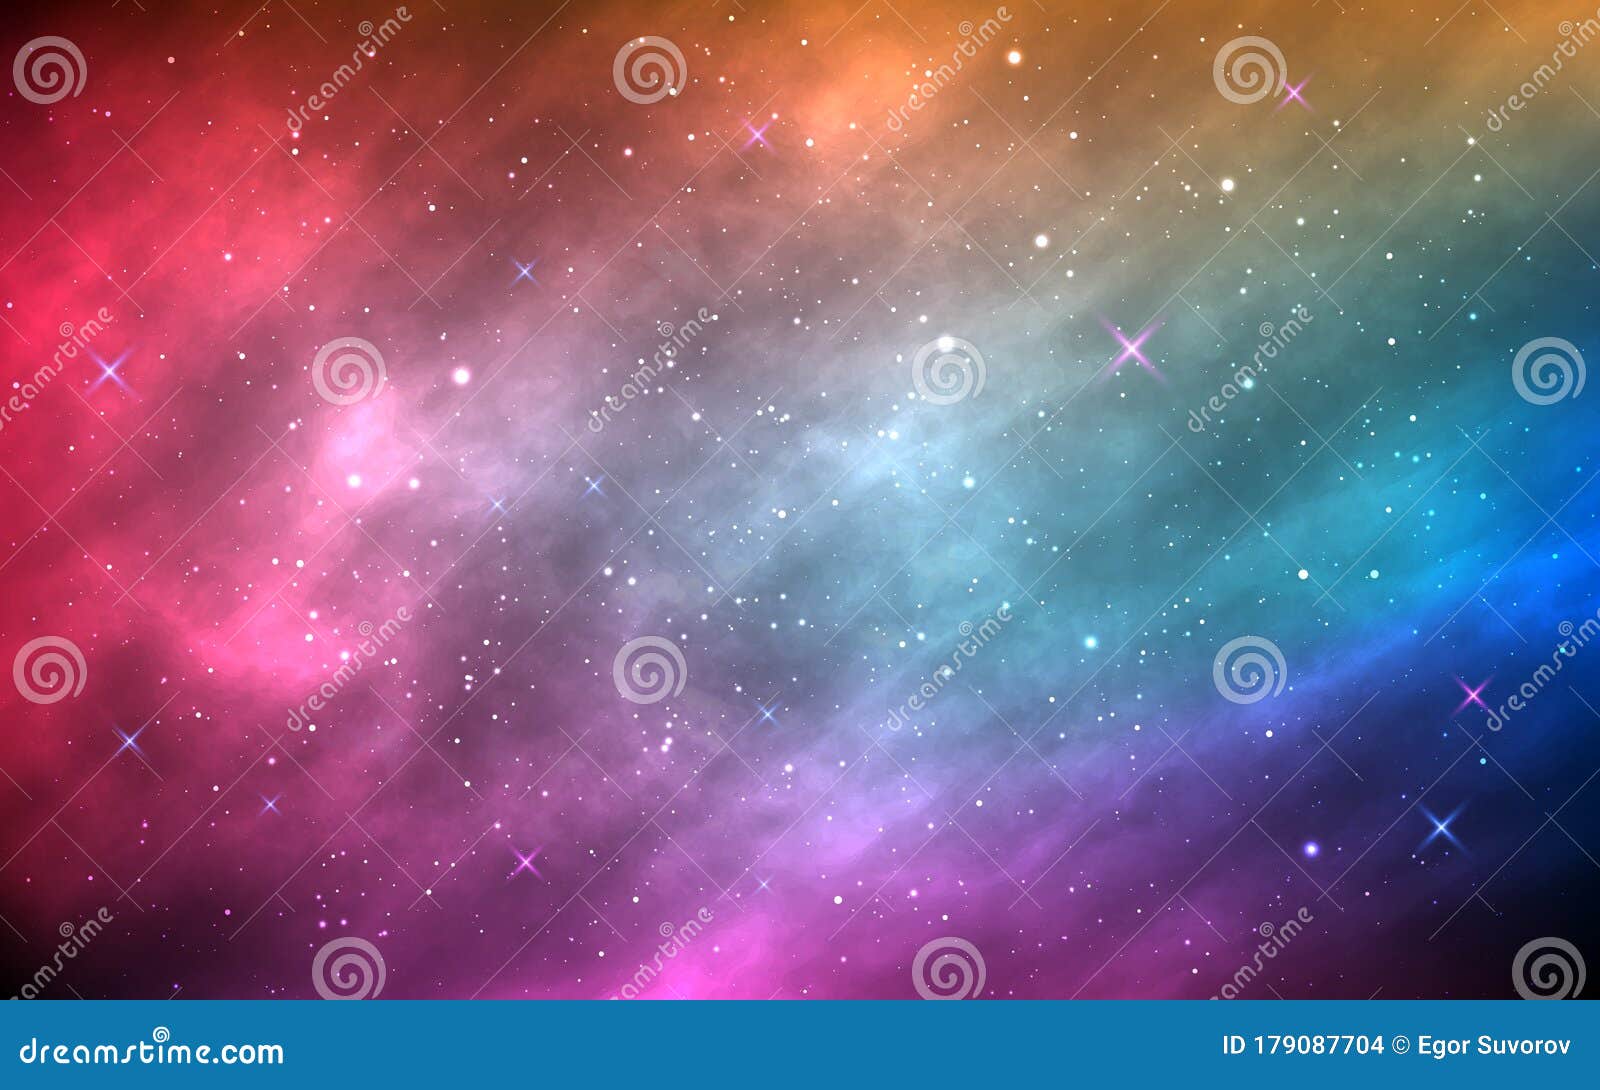 Màu sắc dịu nhẹ của vệ tinh màu hồng tím và những ngôi sao lấp lánh sẽ khiến cho bức ảnh chiếm trọn trái tim bạn. Được thiết kế với một vùng không gian rực rỡ sắc màu, bạn sẽ như nhìn thấy điểm đến cuối cùng của những cung đường chân trời.